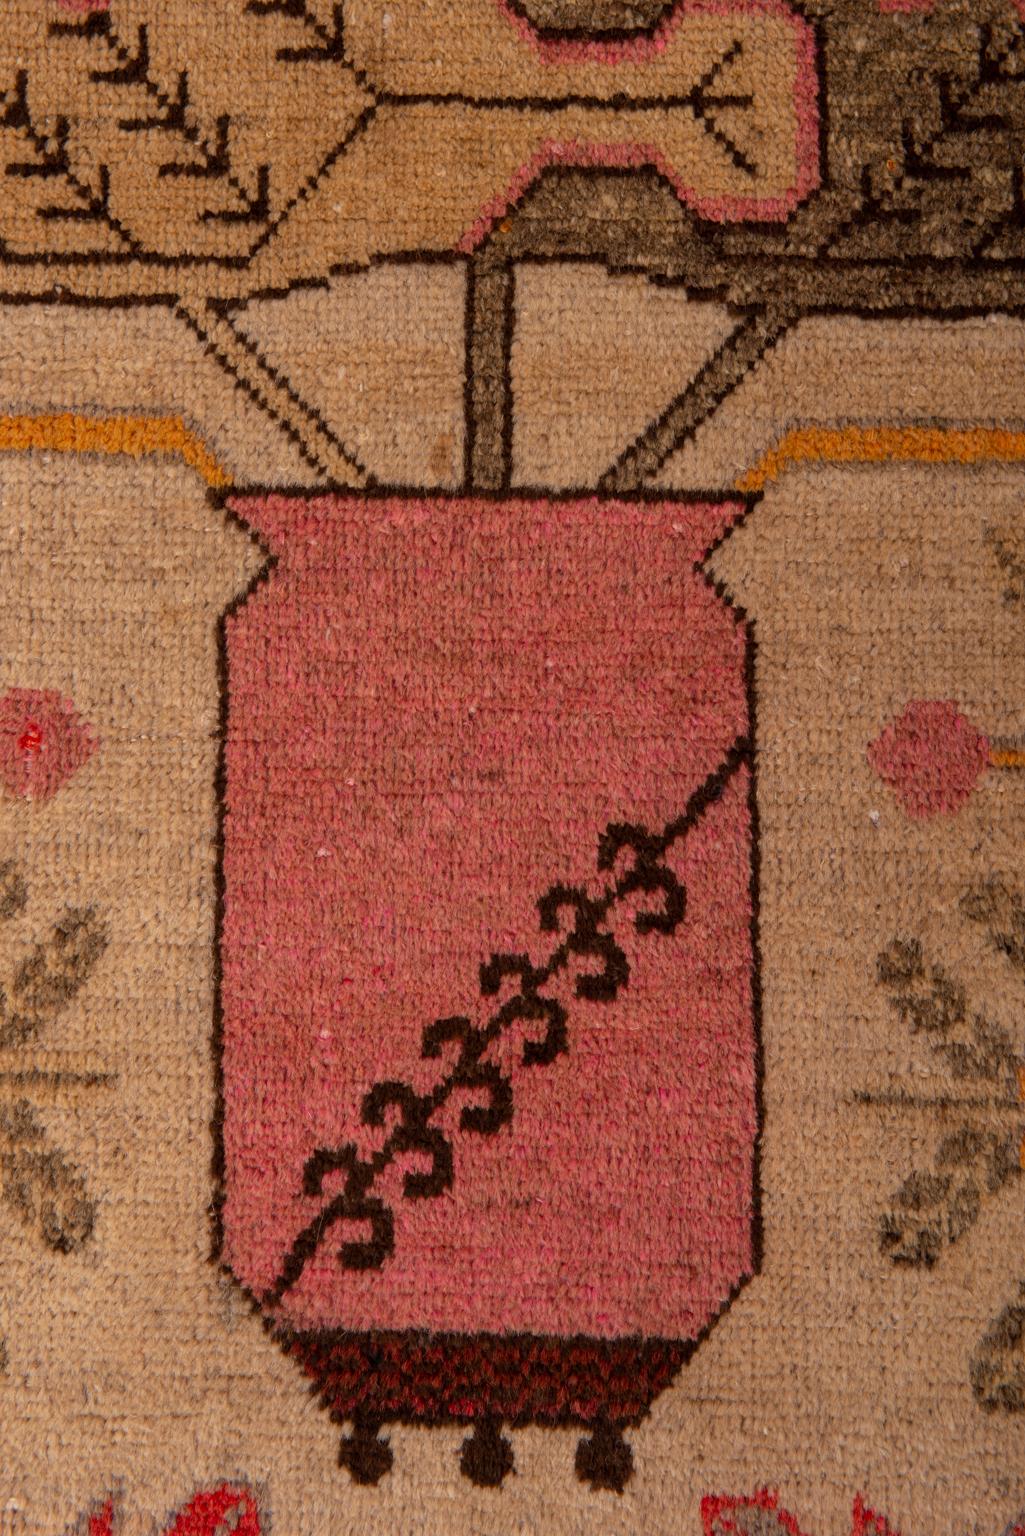 Wool Khotan Rug from Samarkanda with Flower Vases